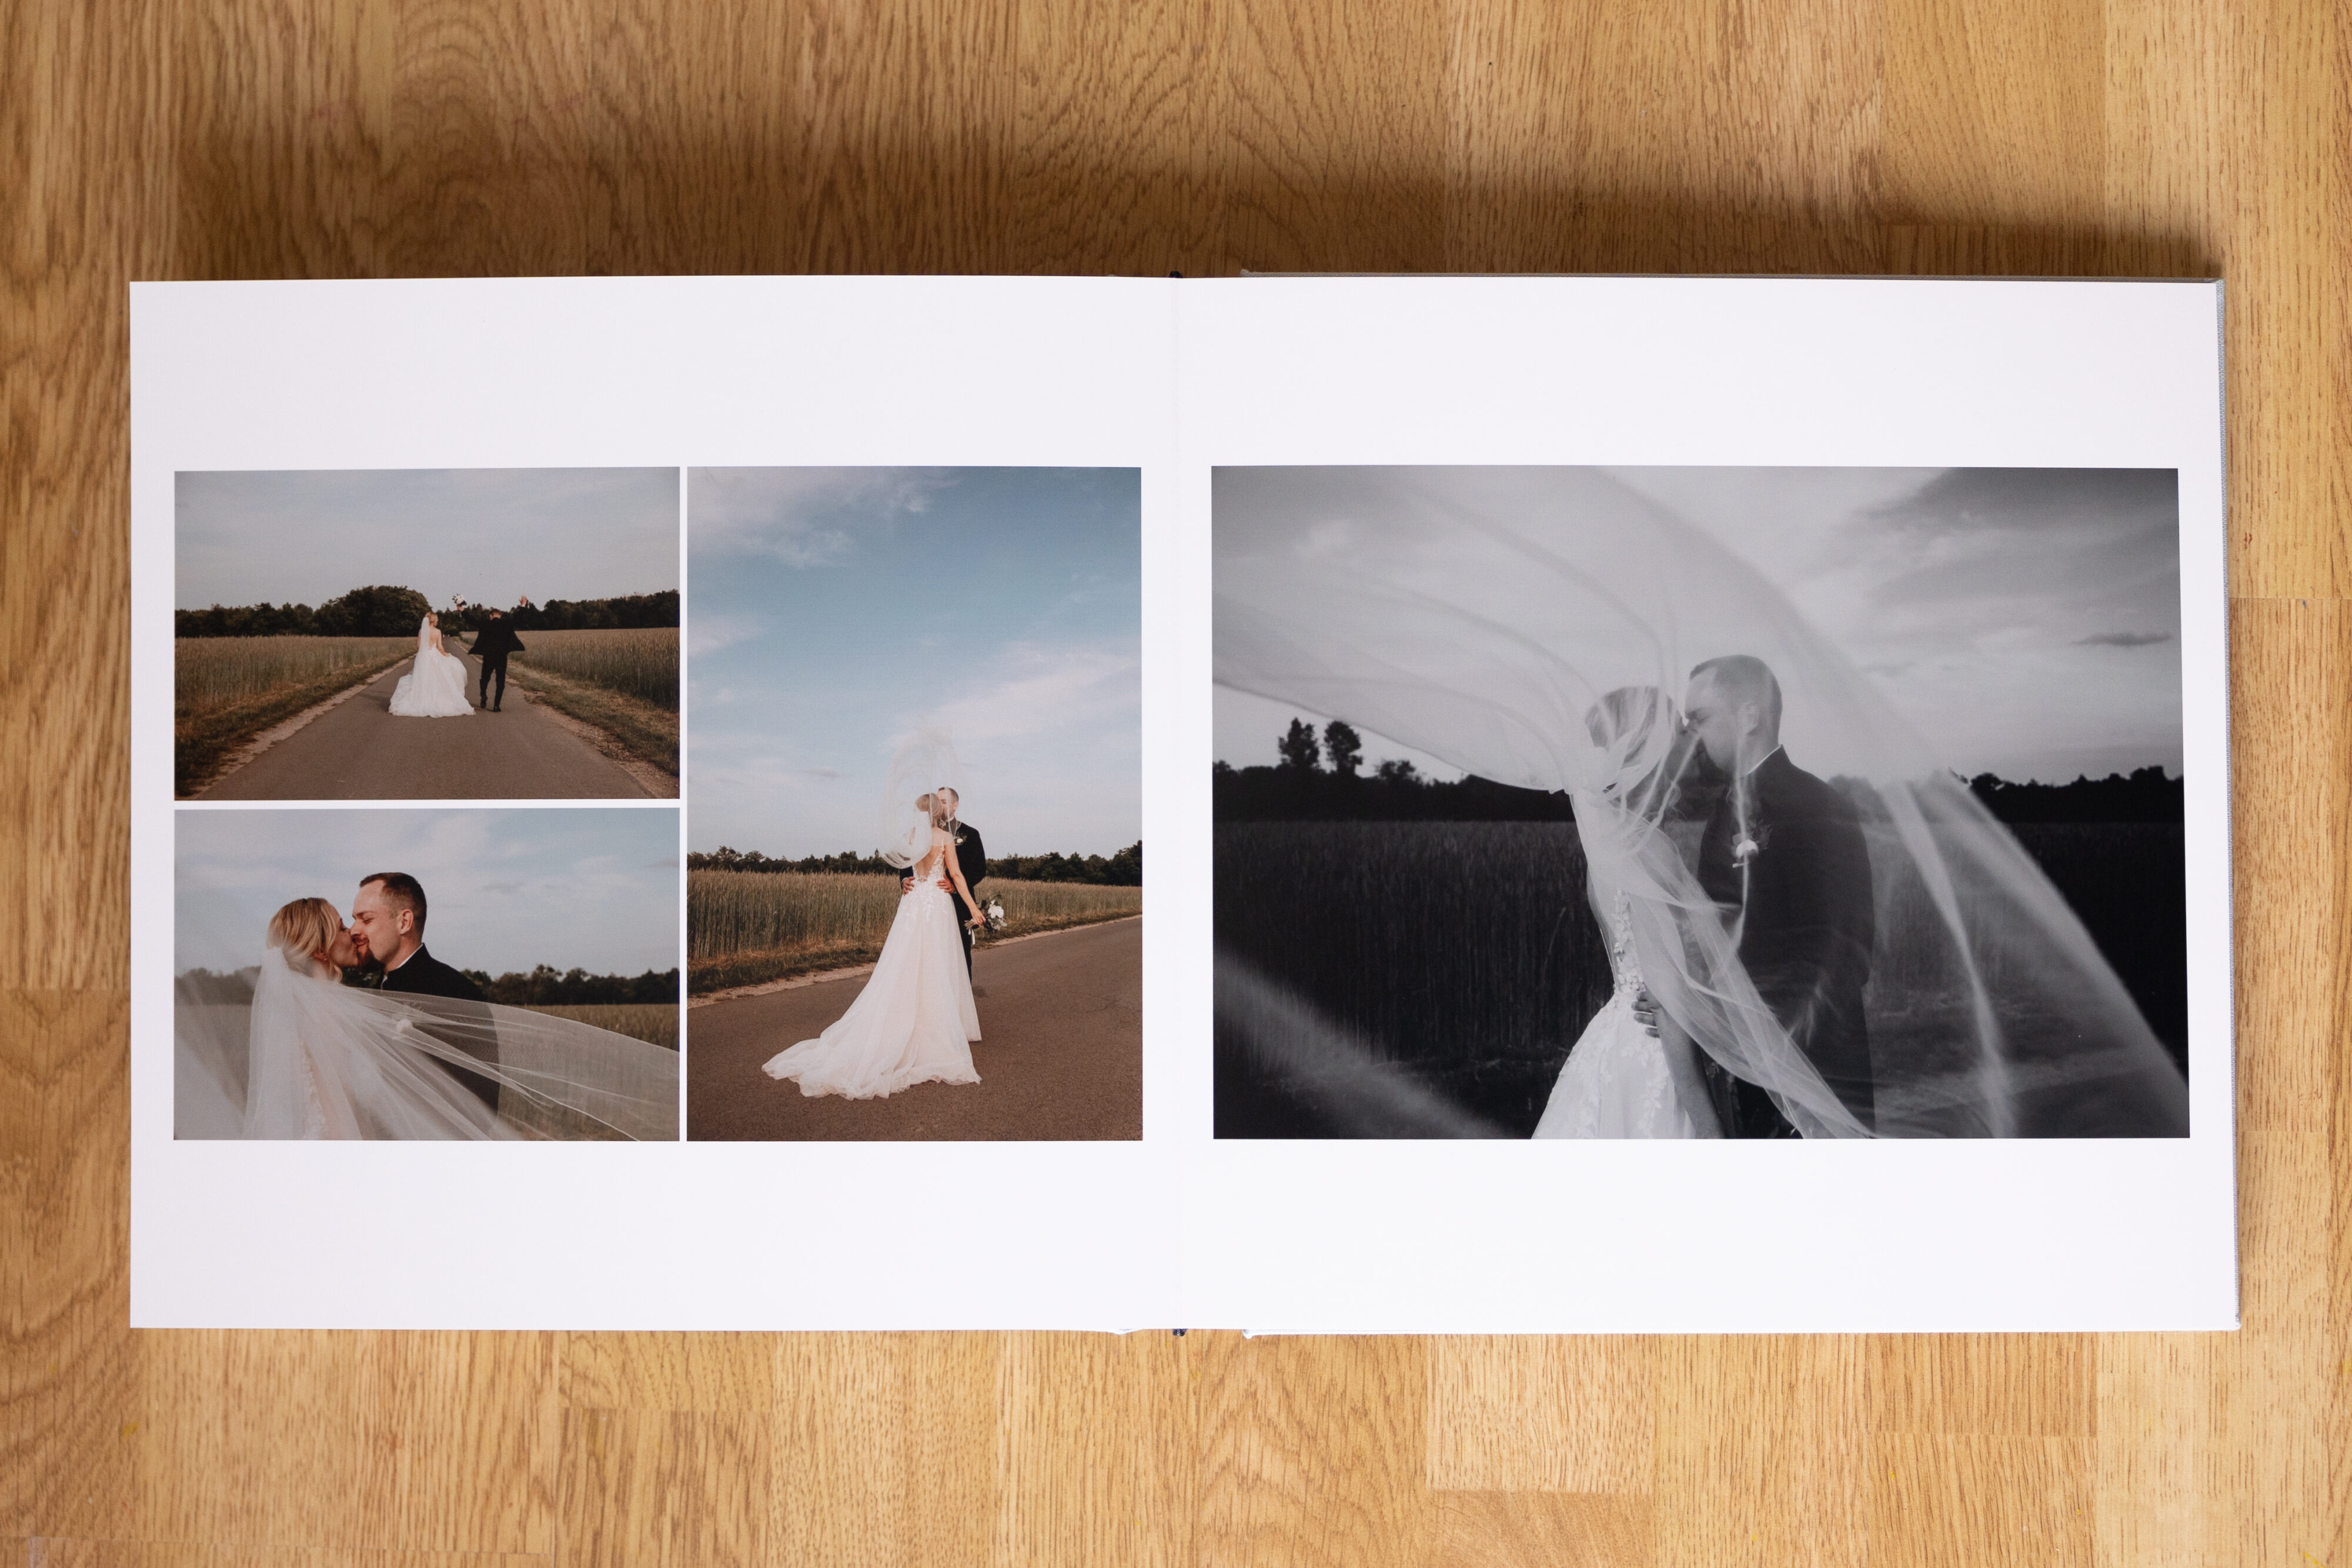 Fotobuch Hochzeitsalbum Hochzeitsfotografin berlin erstellt Fotobücher von eurer Hochzeit Leinencover individuell gestaltbar und hochwertig 30x30 cm Querformat lensofbeauty